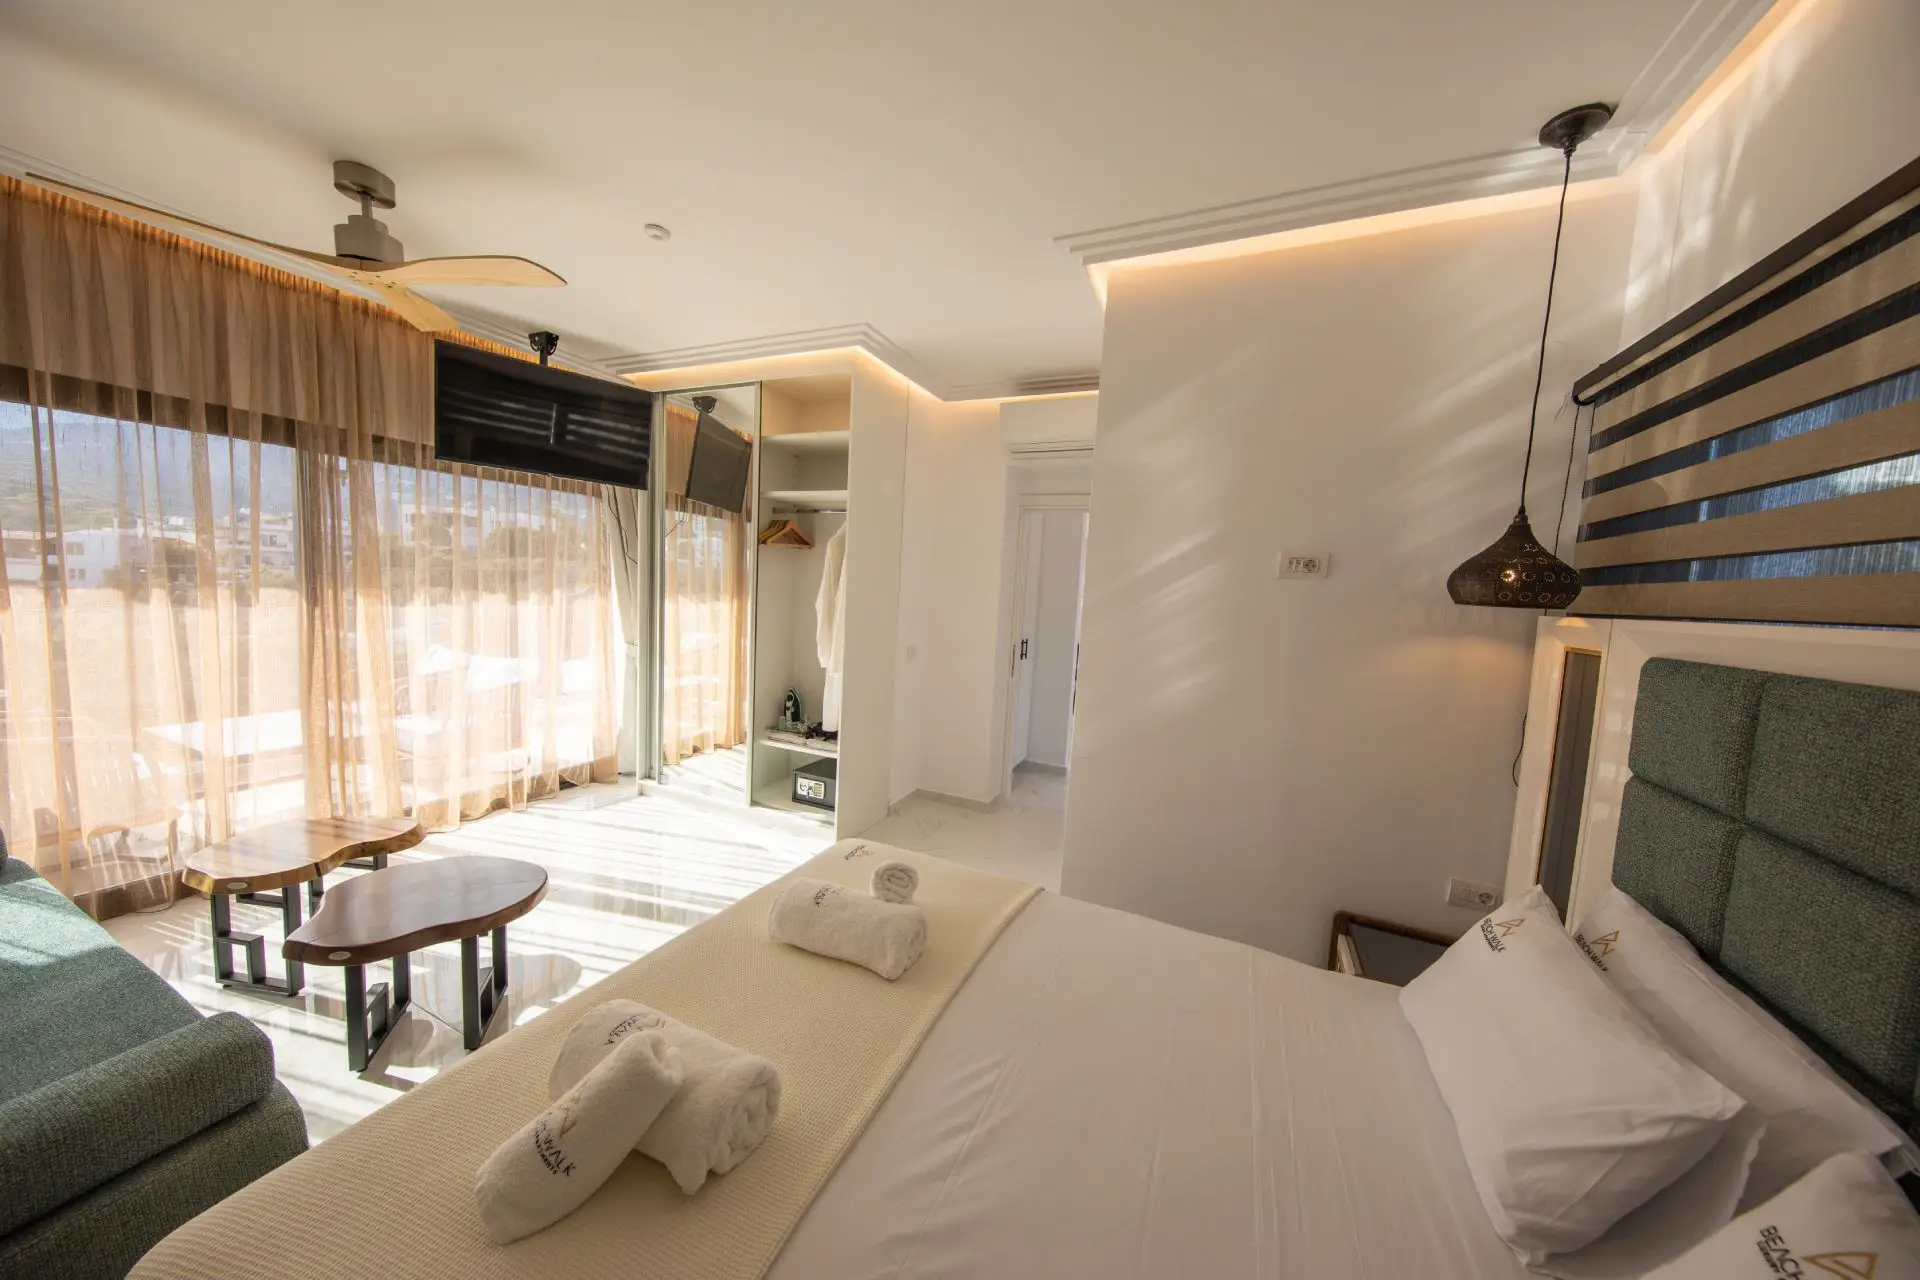 Διαμέρισμα με Ένα Υπνοδωμάτιο και Θέμα στη Θάλασσα - Beach Walk Apartments Crete